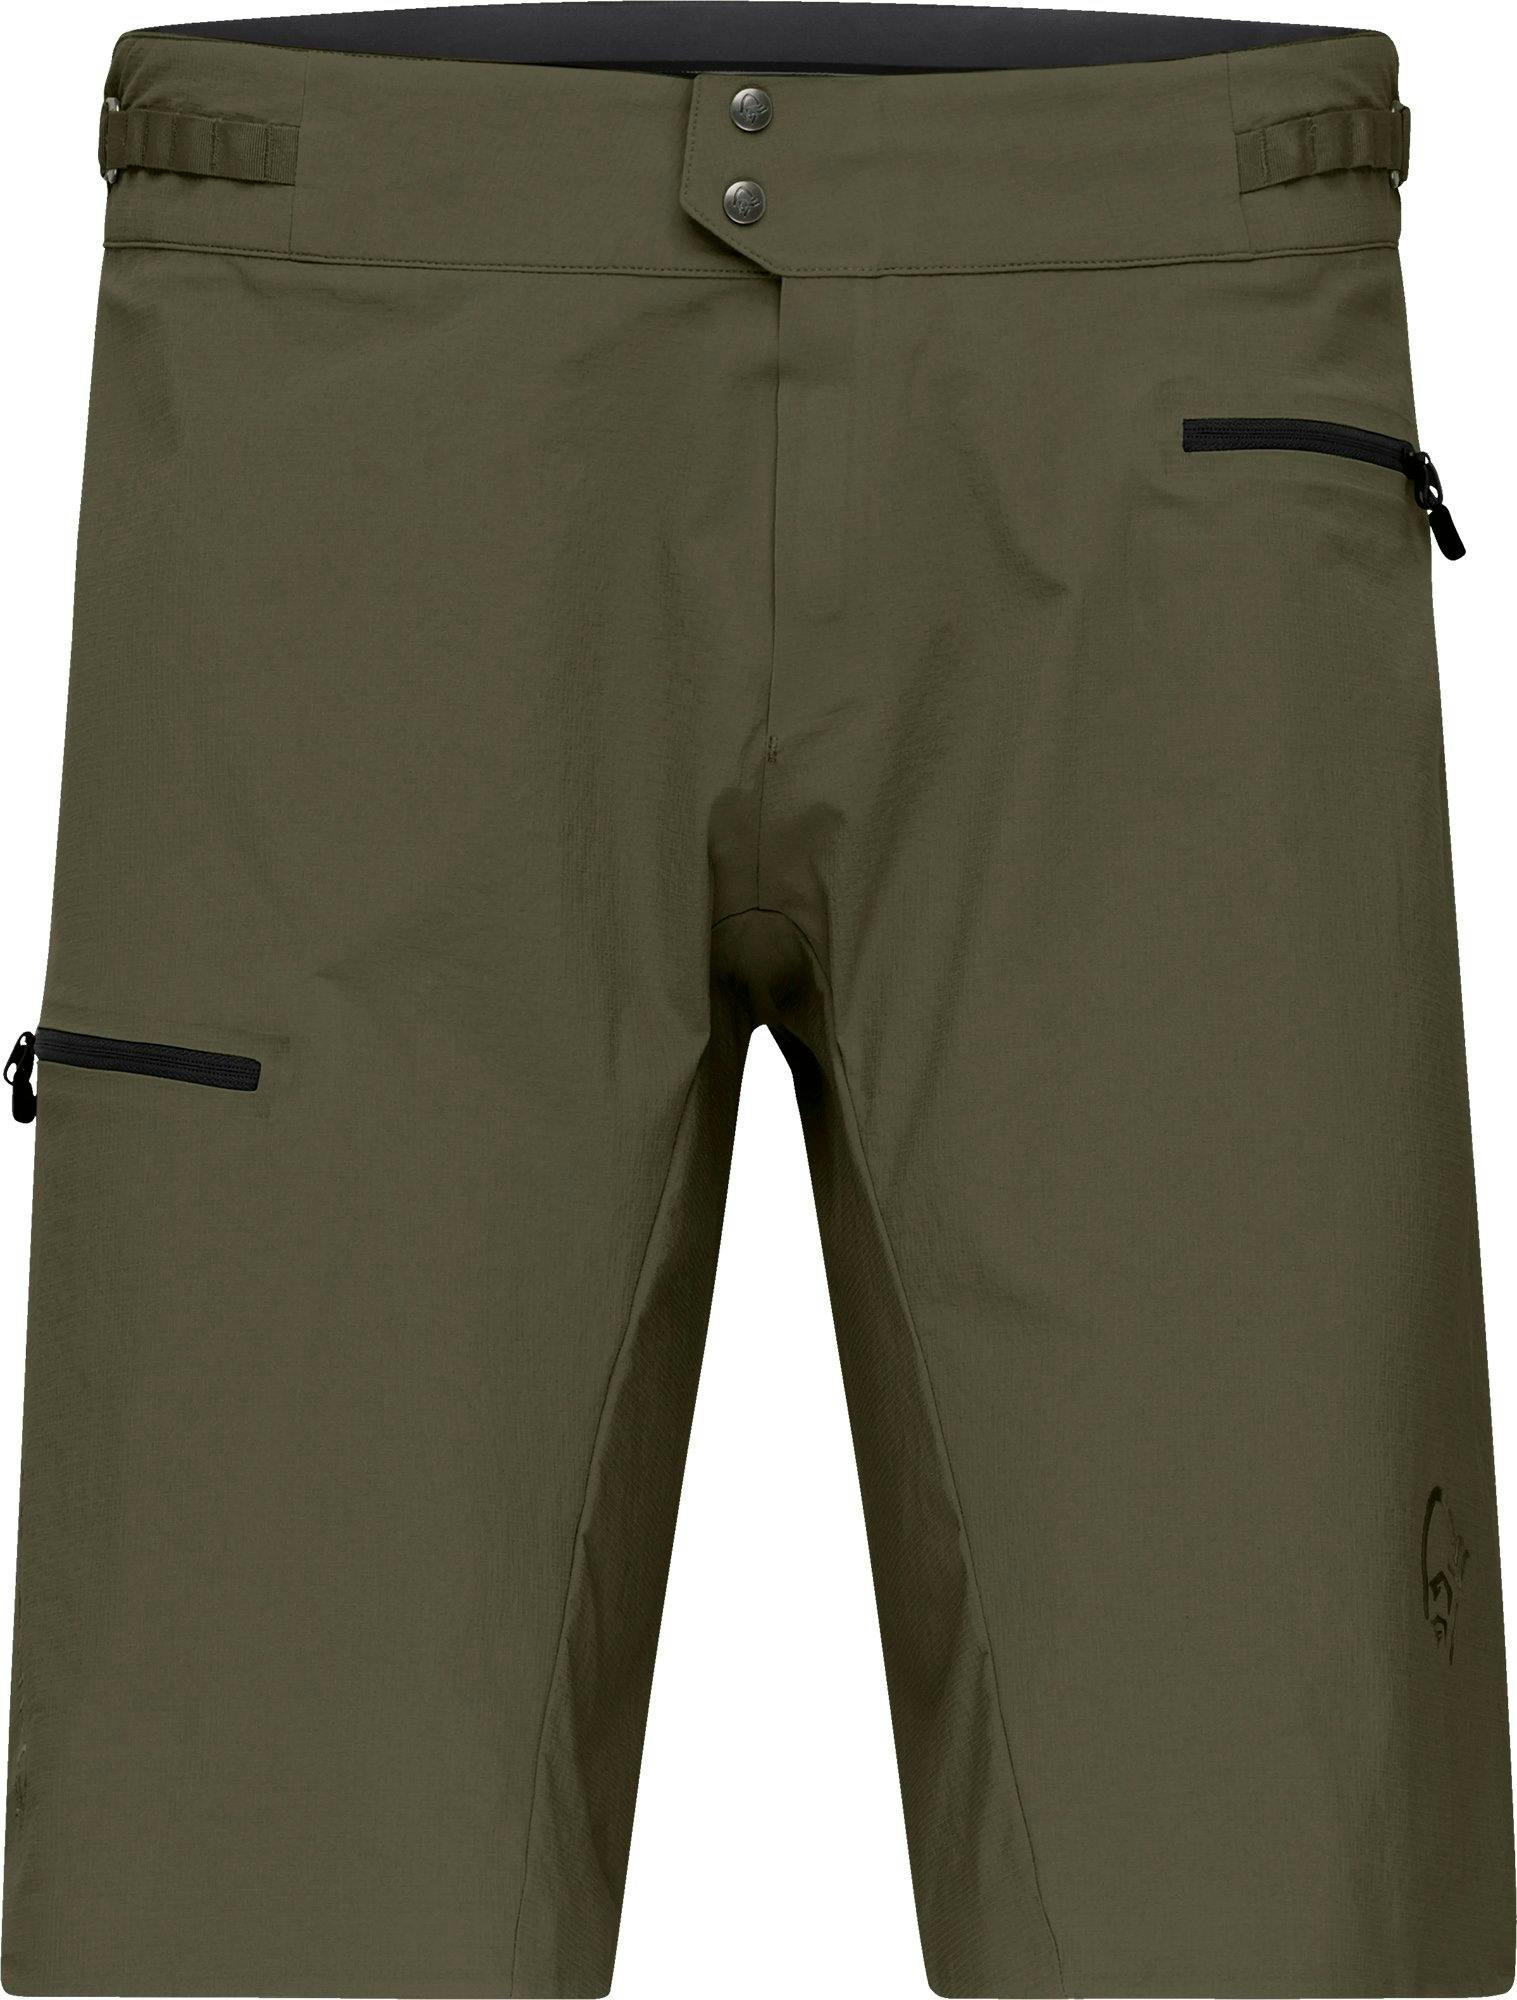 Product image for Fjørå Flex1 Light Shorts - Men's